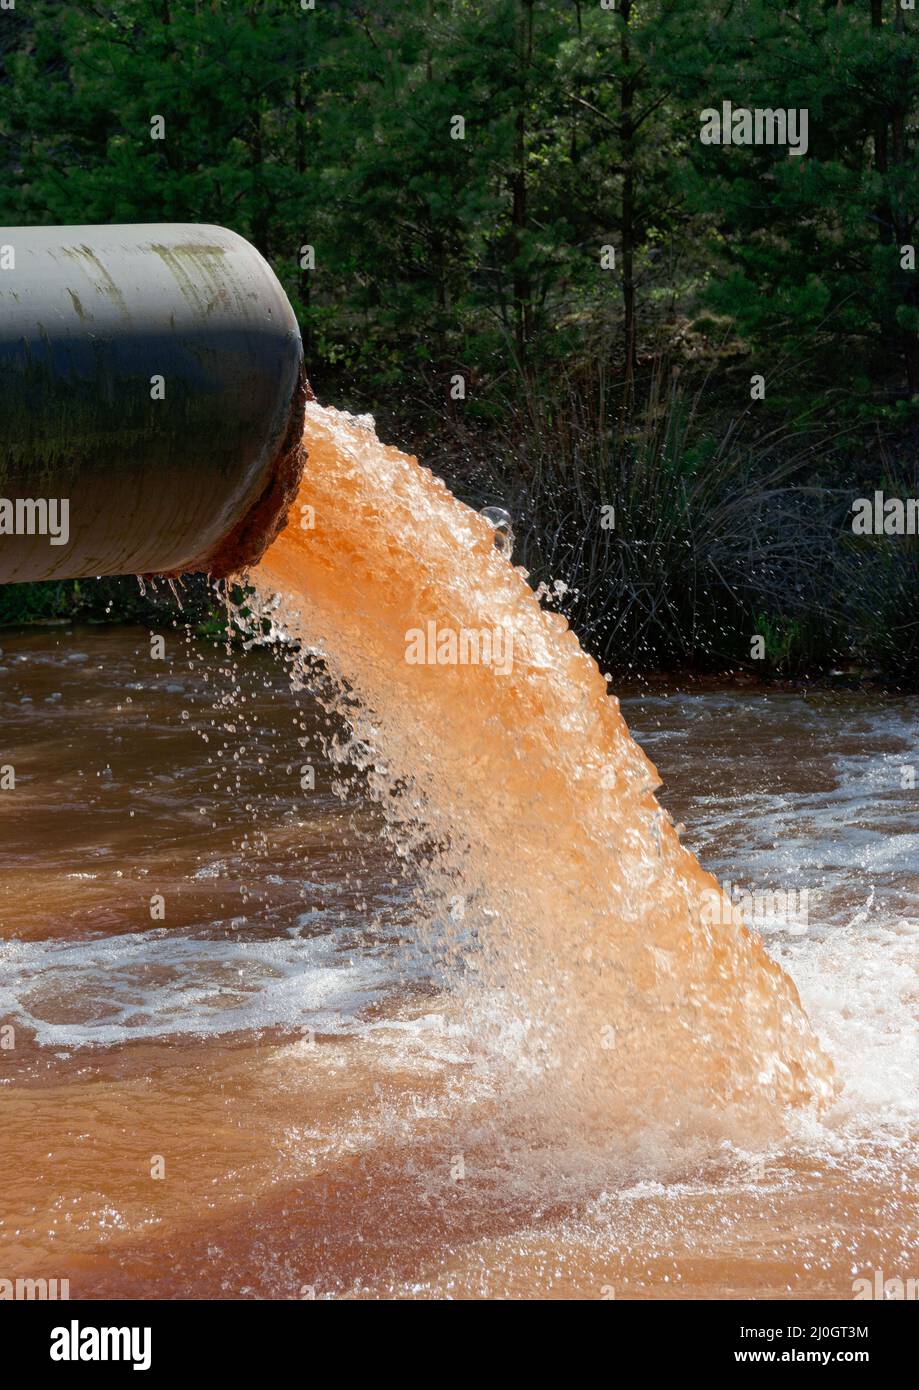 Le acque reflue vengono scaricate nel fiume, in formato verticale Foto Stock